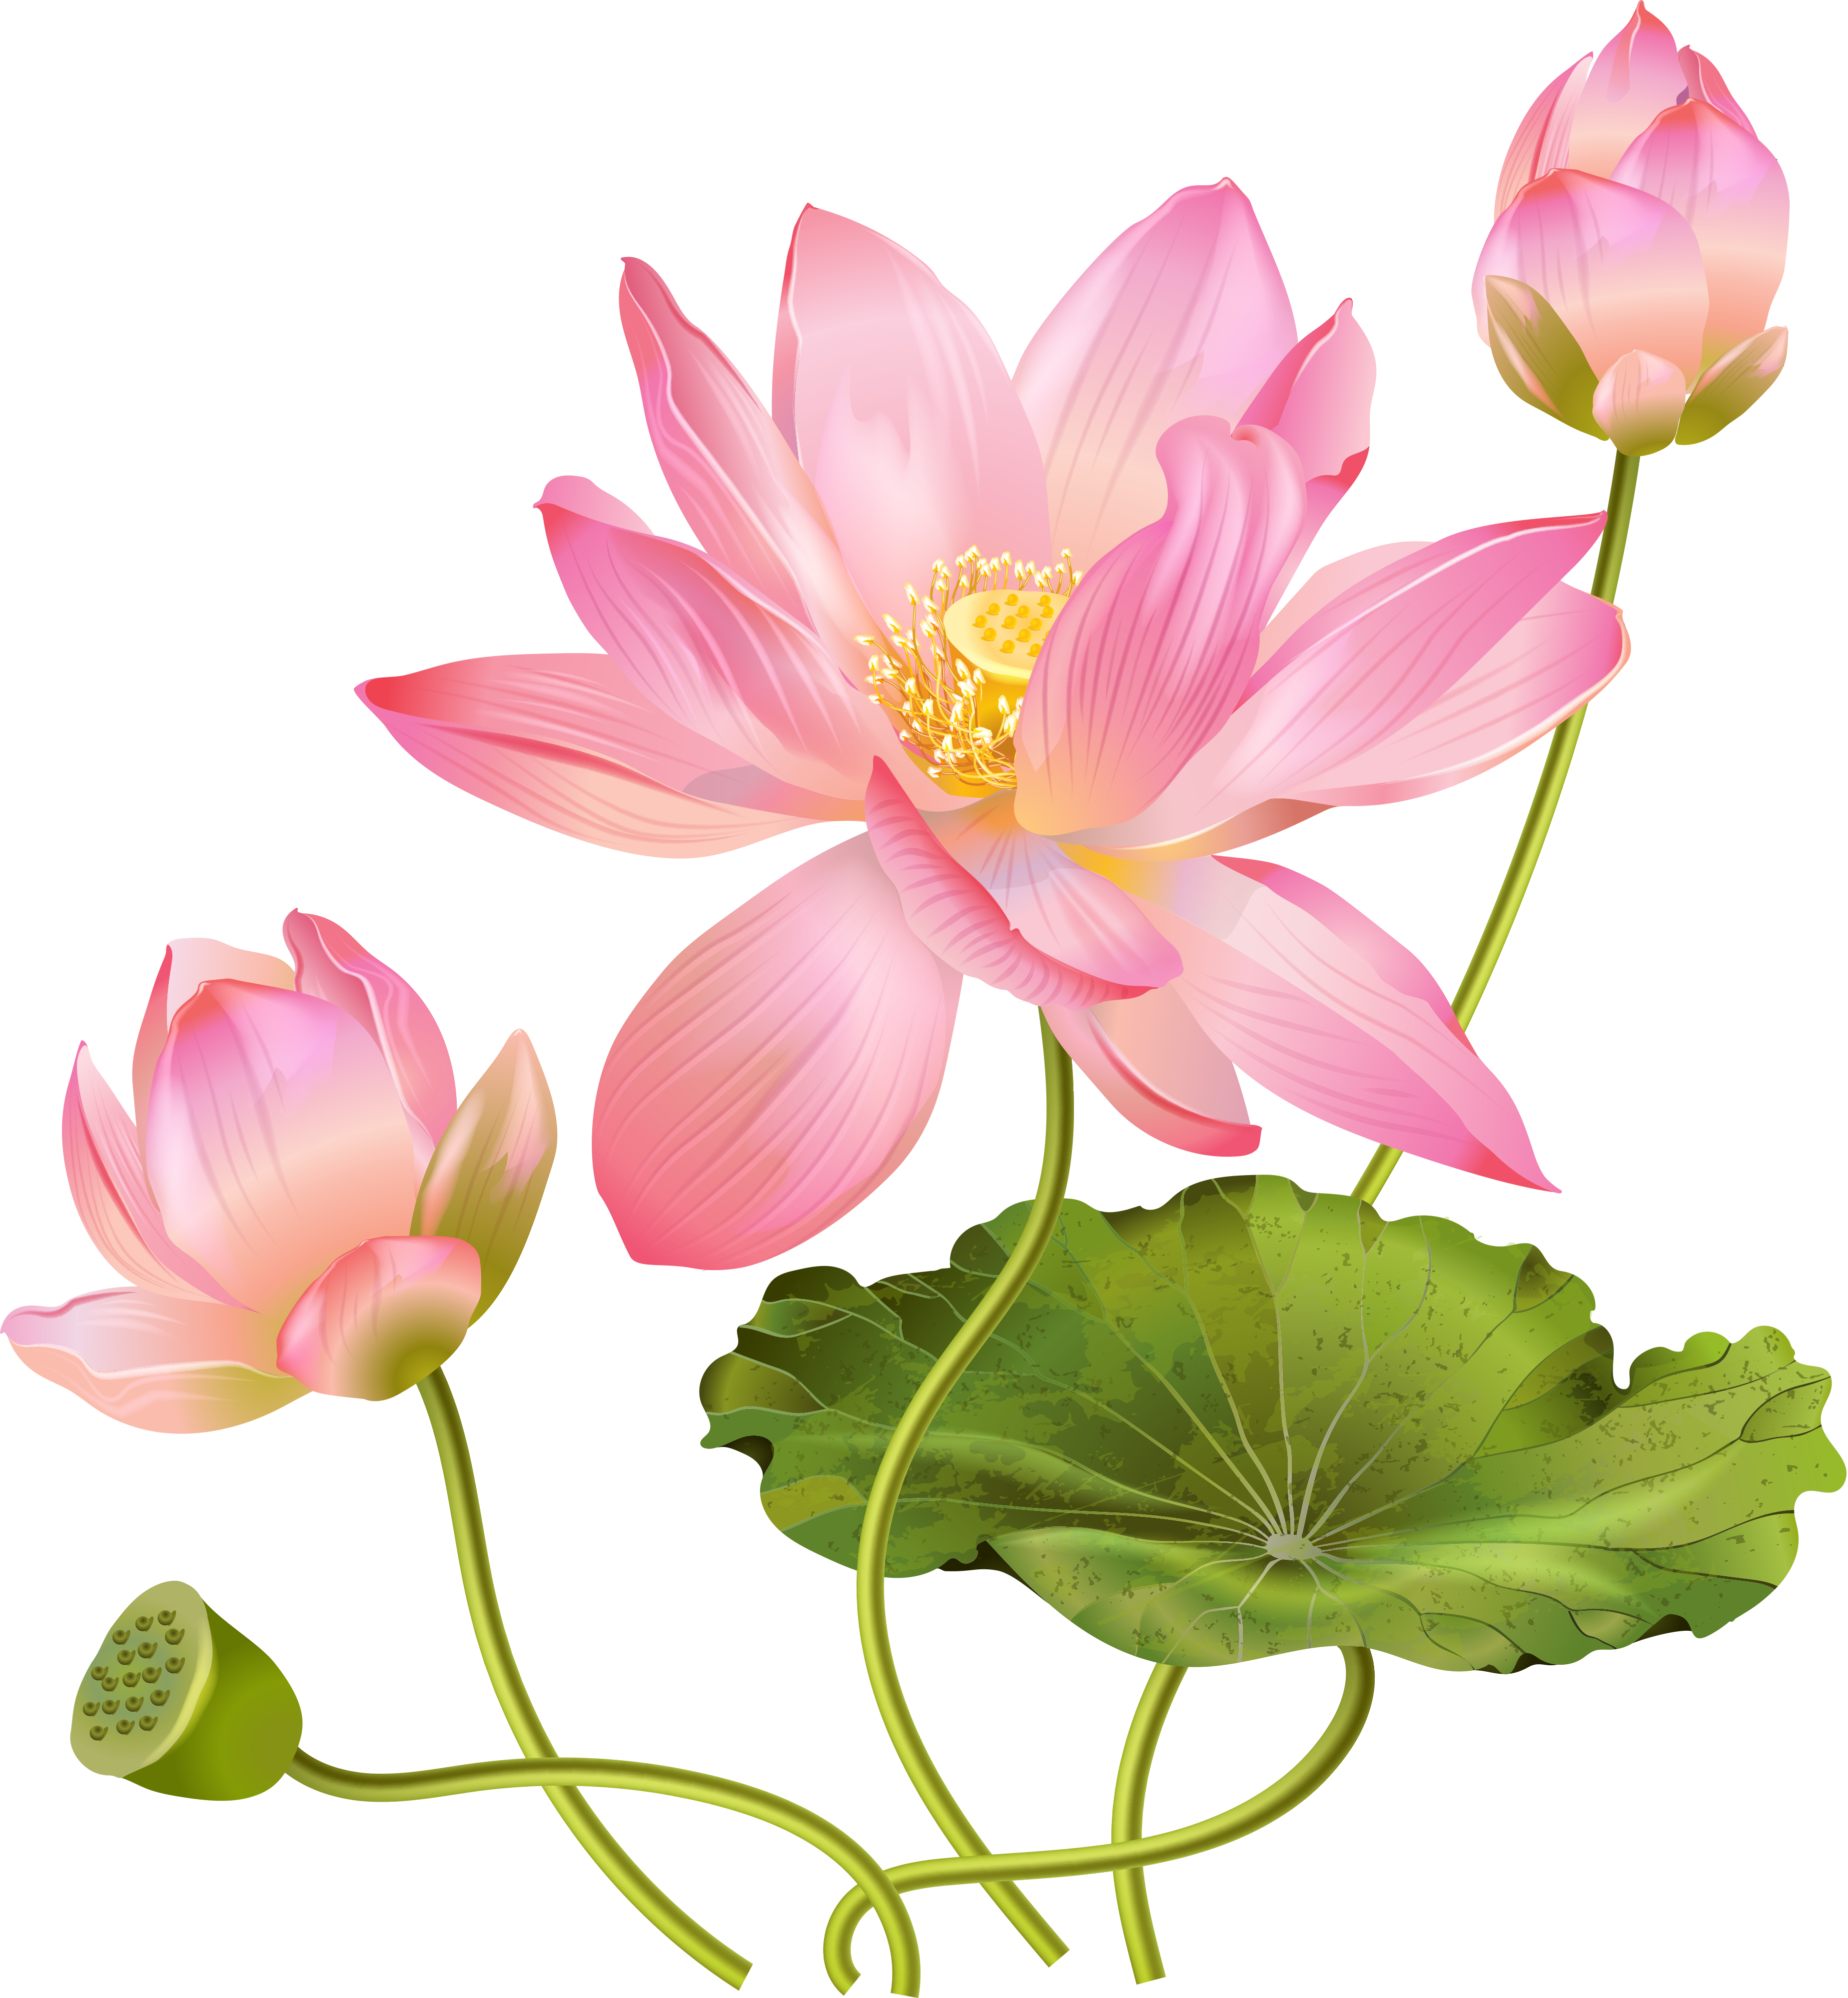 Download Pink Lotus Flower Free Photo HQ PNG Image | FreePNGImg